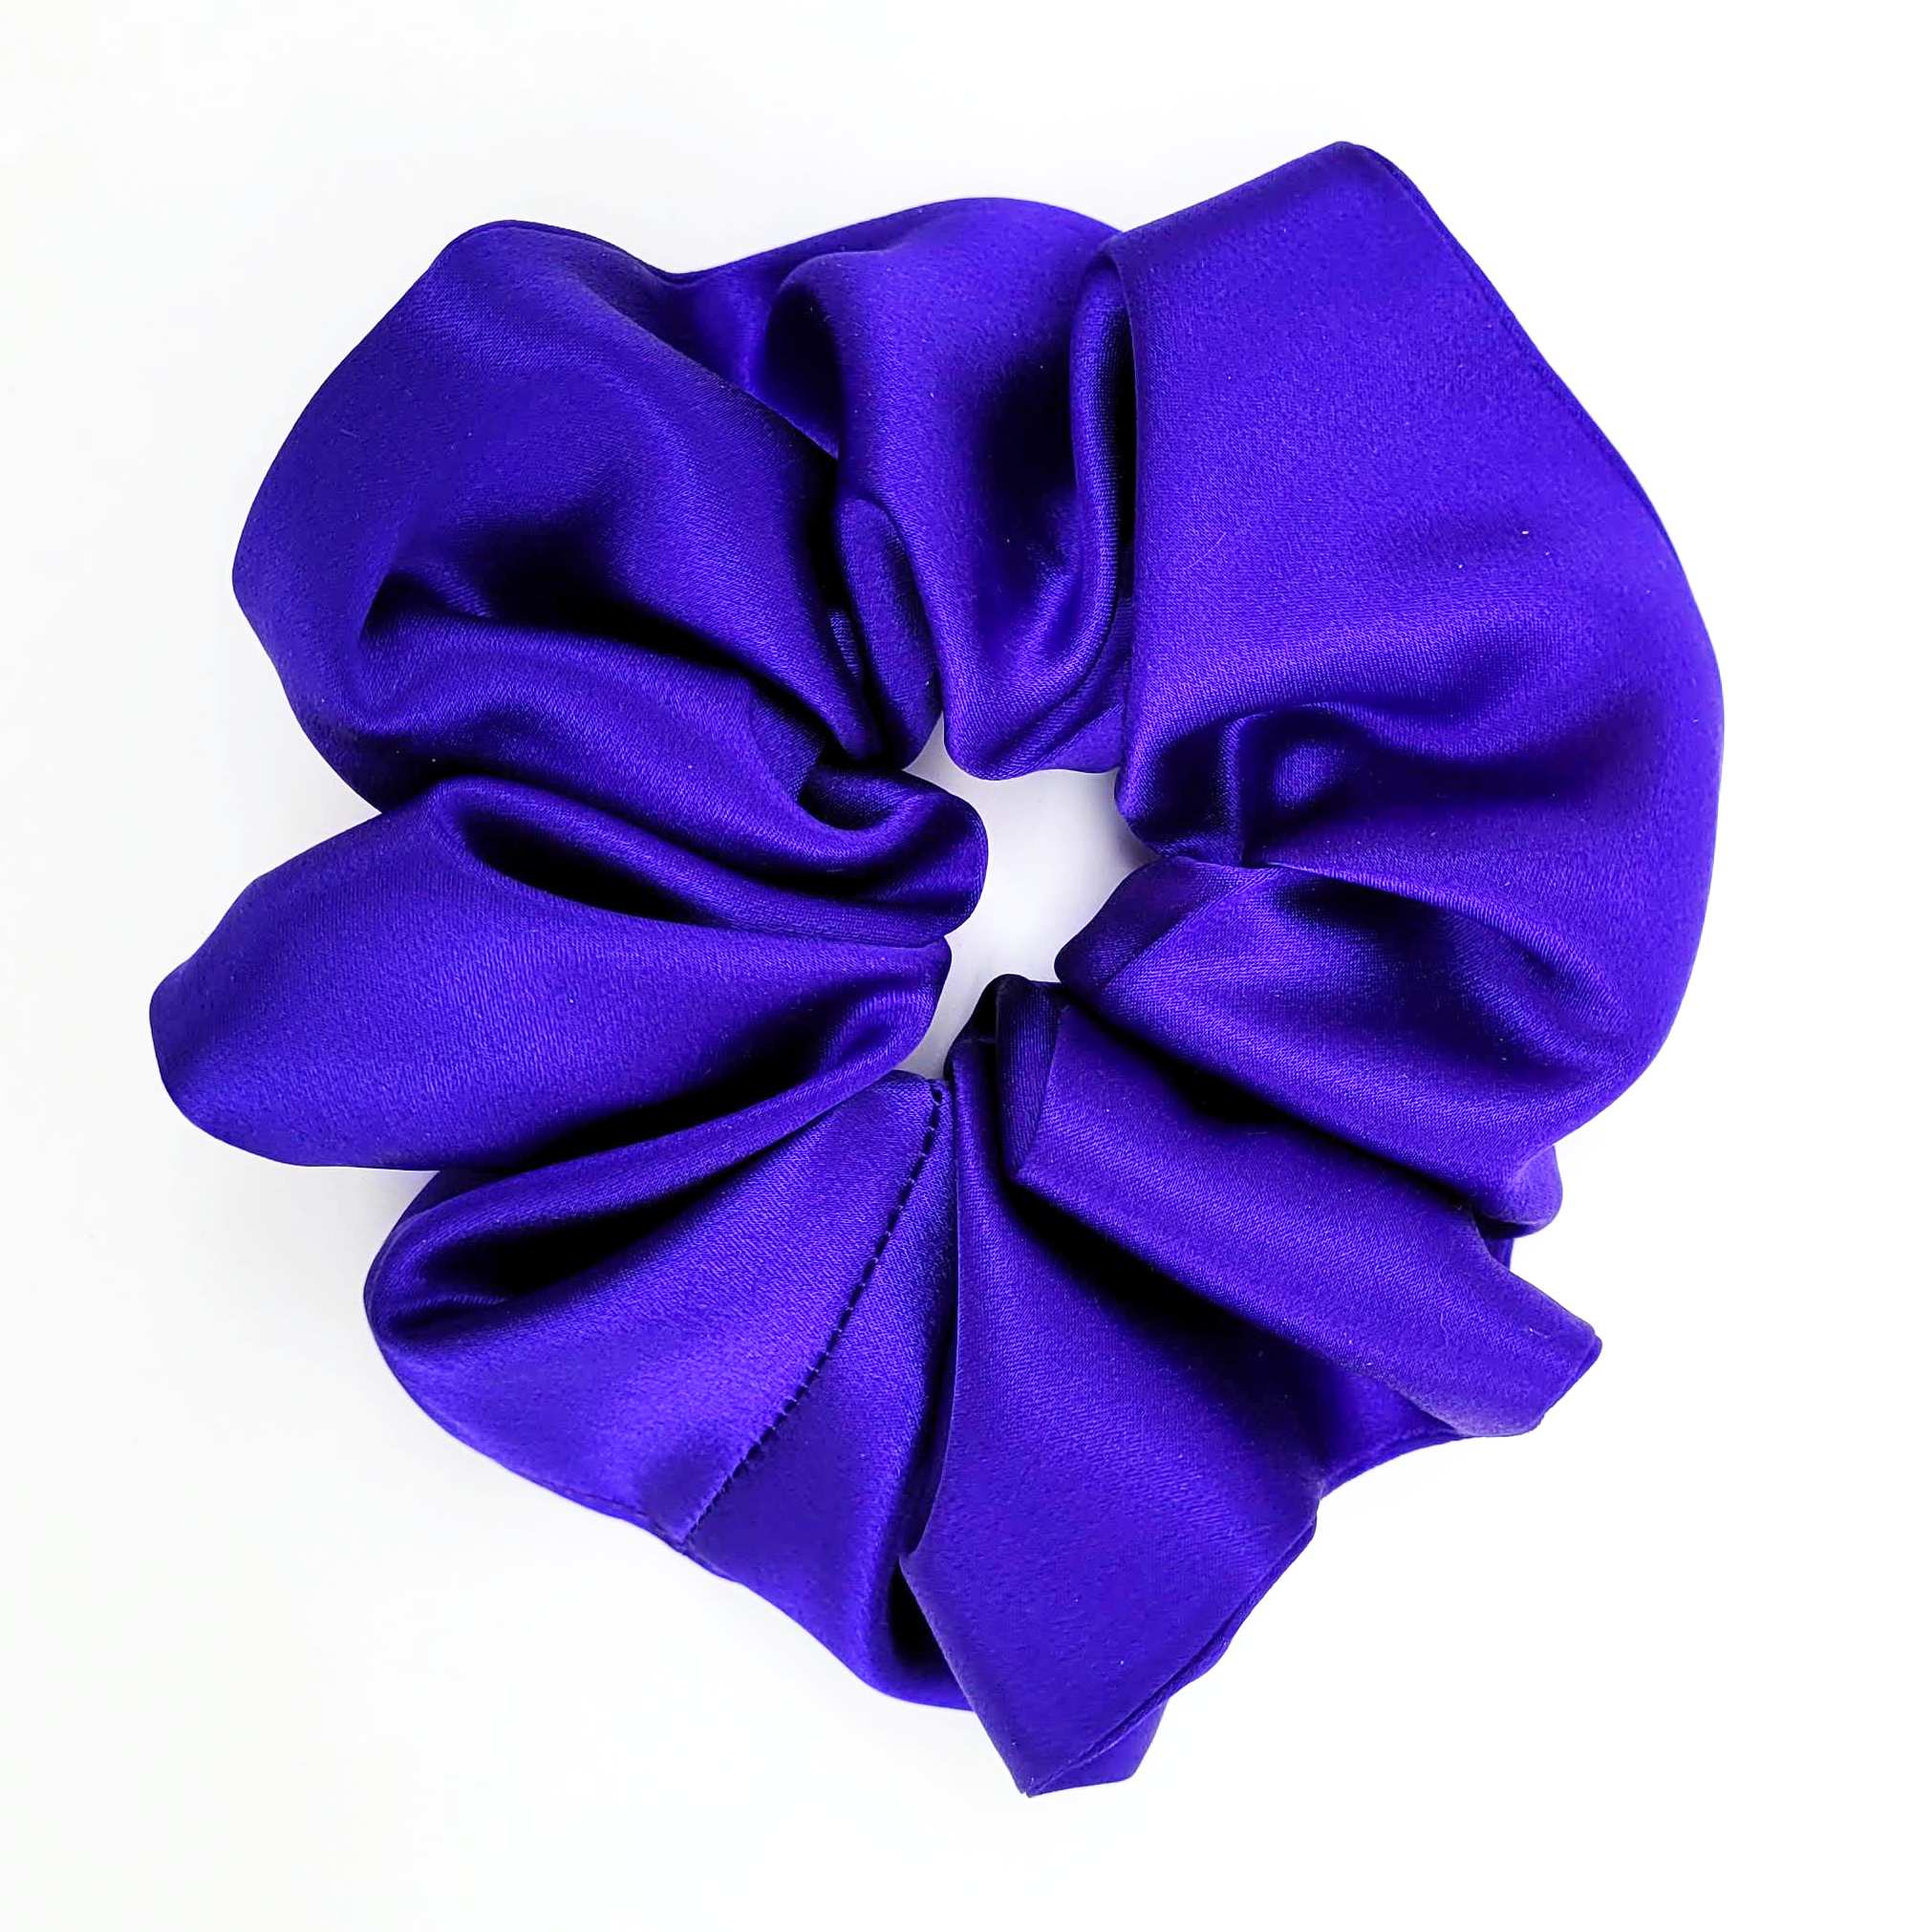 purple silk scrunchie jumbo size hair accessory handmade by Lynne Kiel